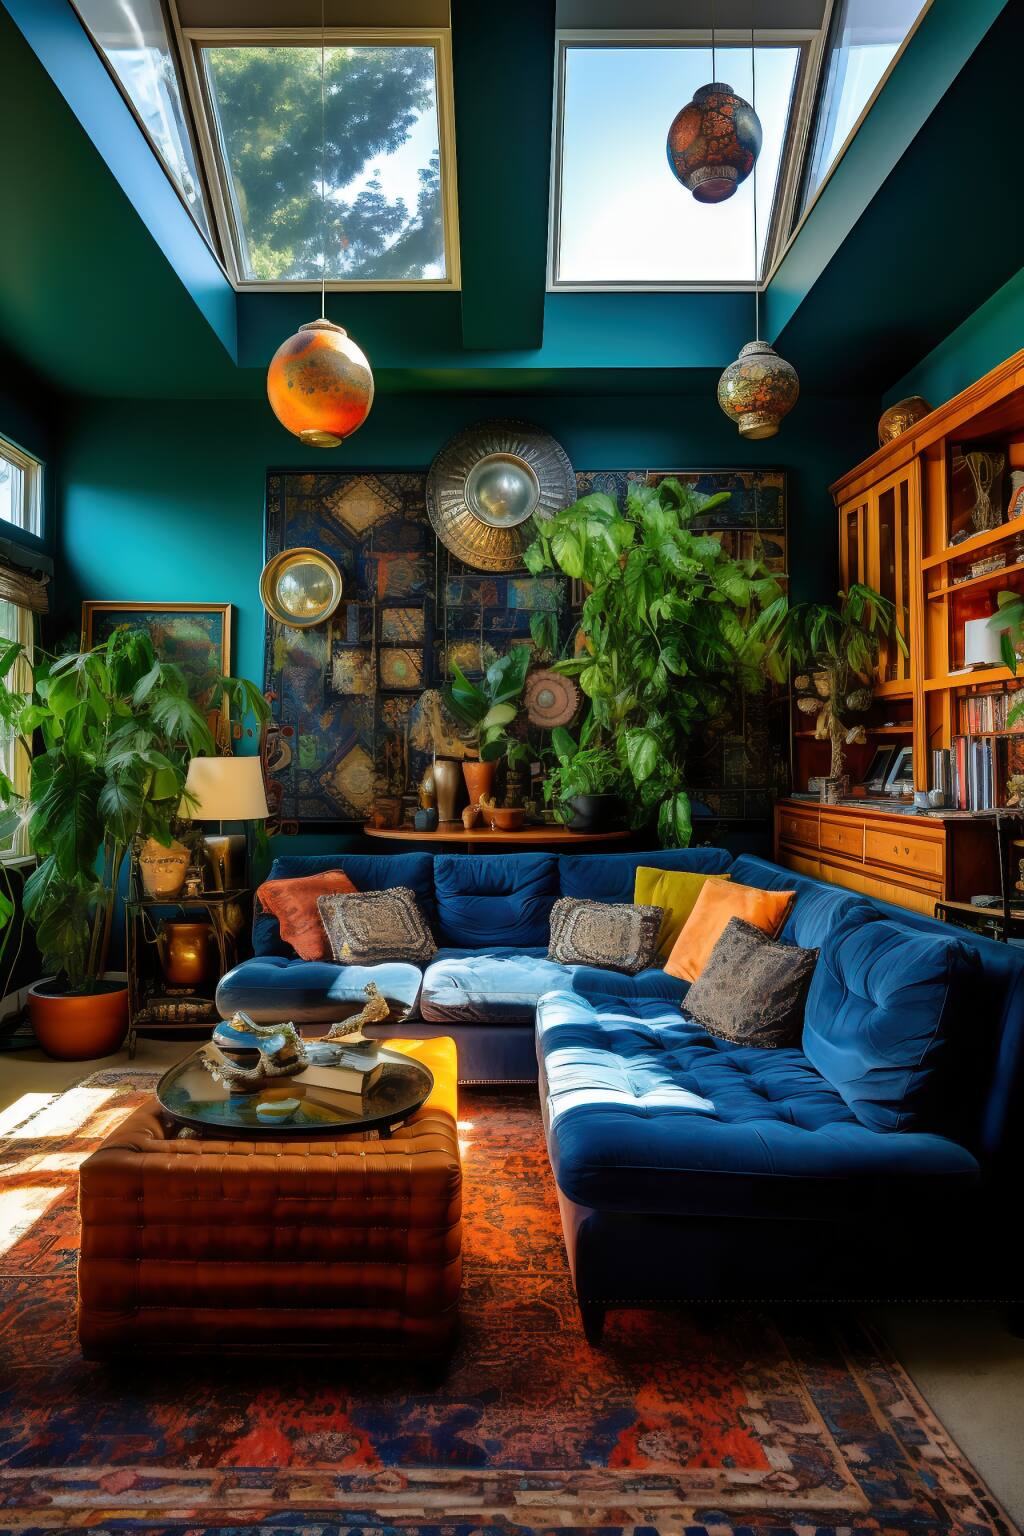 Bohème-Wohnzimmer In Blau- Und Grüntönen, Mit Einem Samtsofa, Einem Vintage-Couchtisch Und Hängepflanzen.